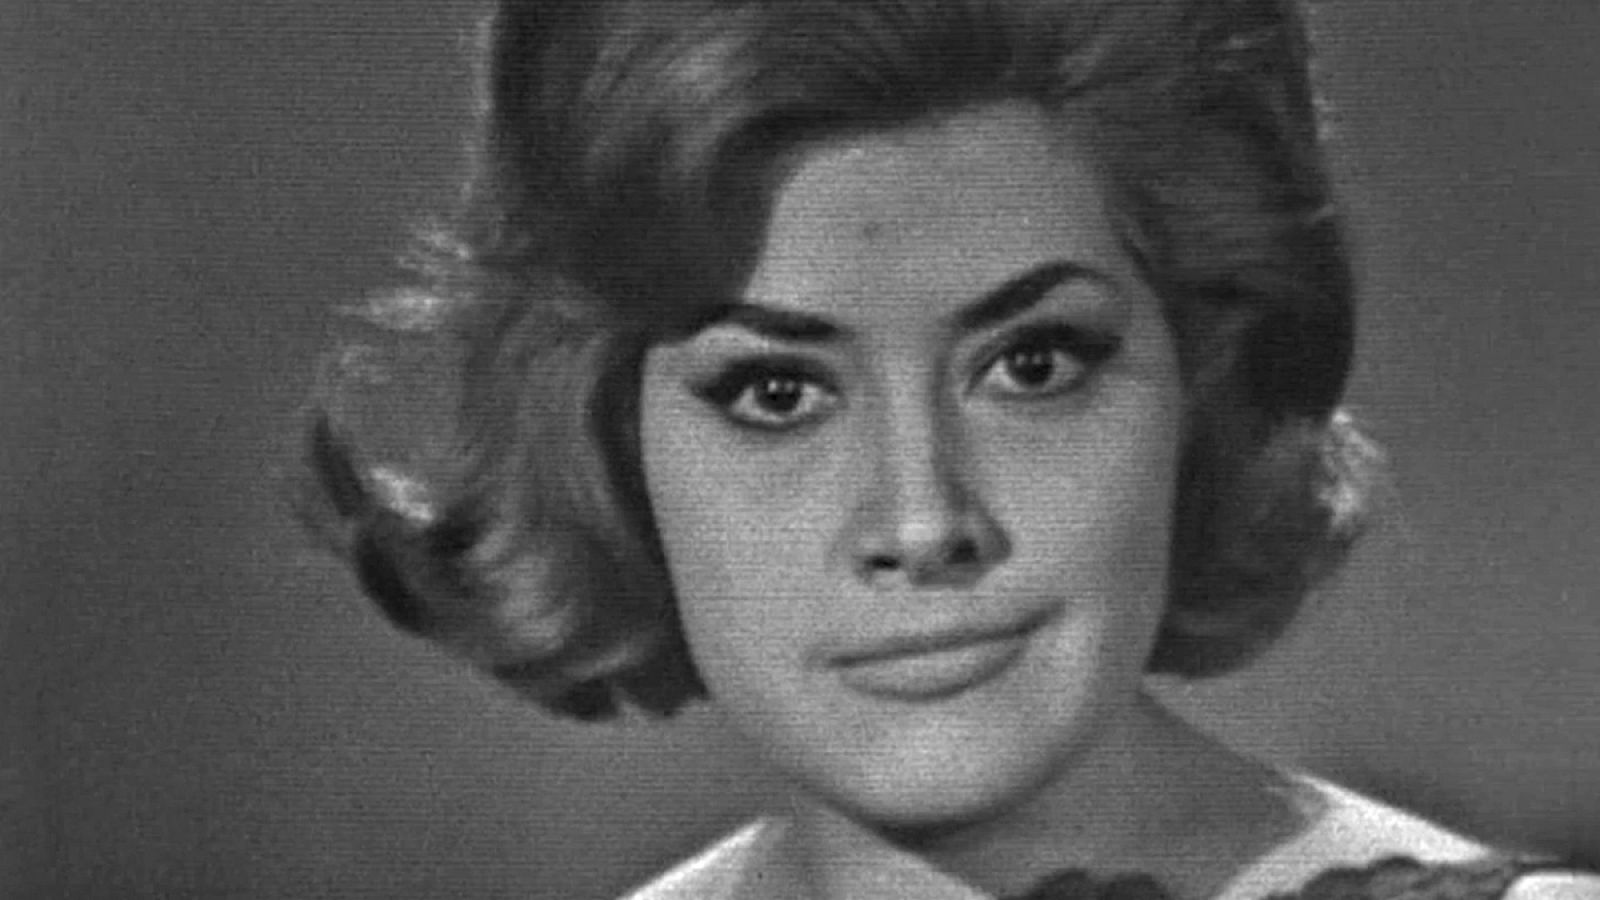 Eurovisión 1965 - Conchita Bautista cantó "¡Qué bueno, qué bueno!"